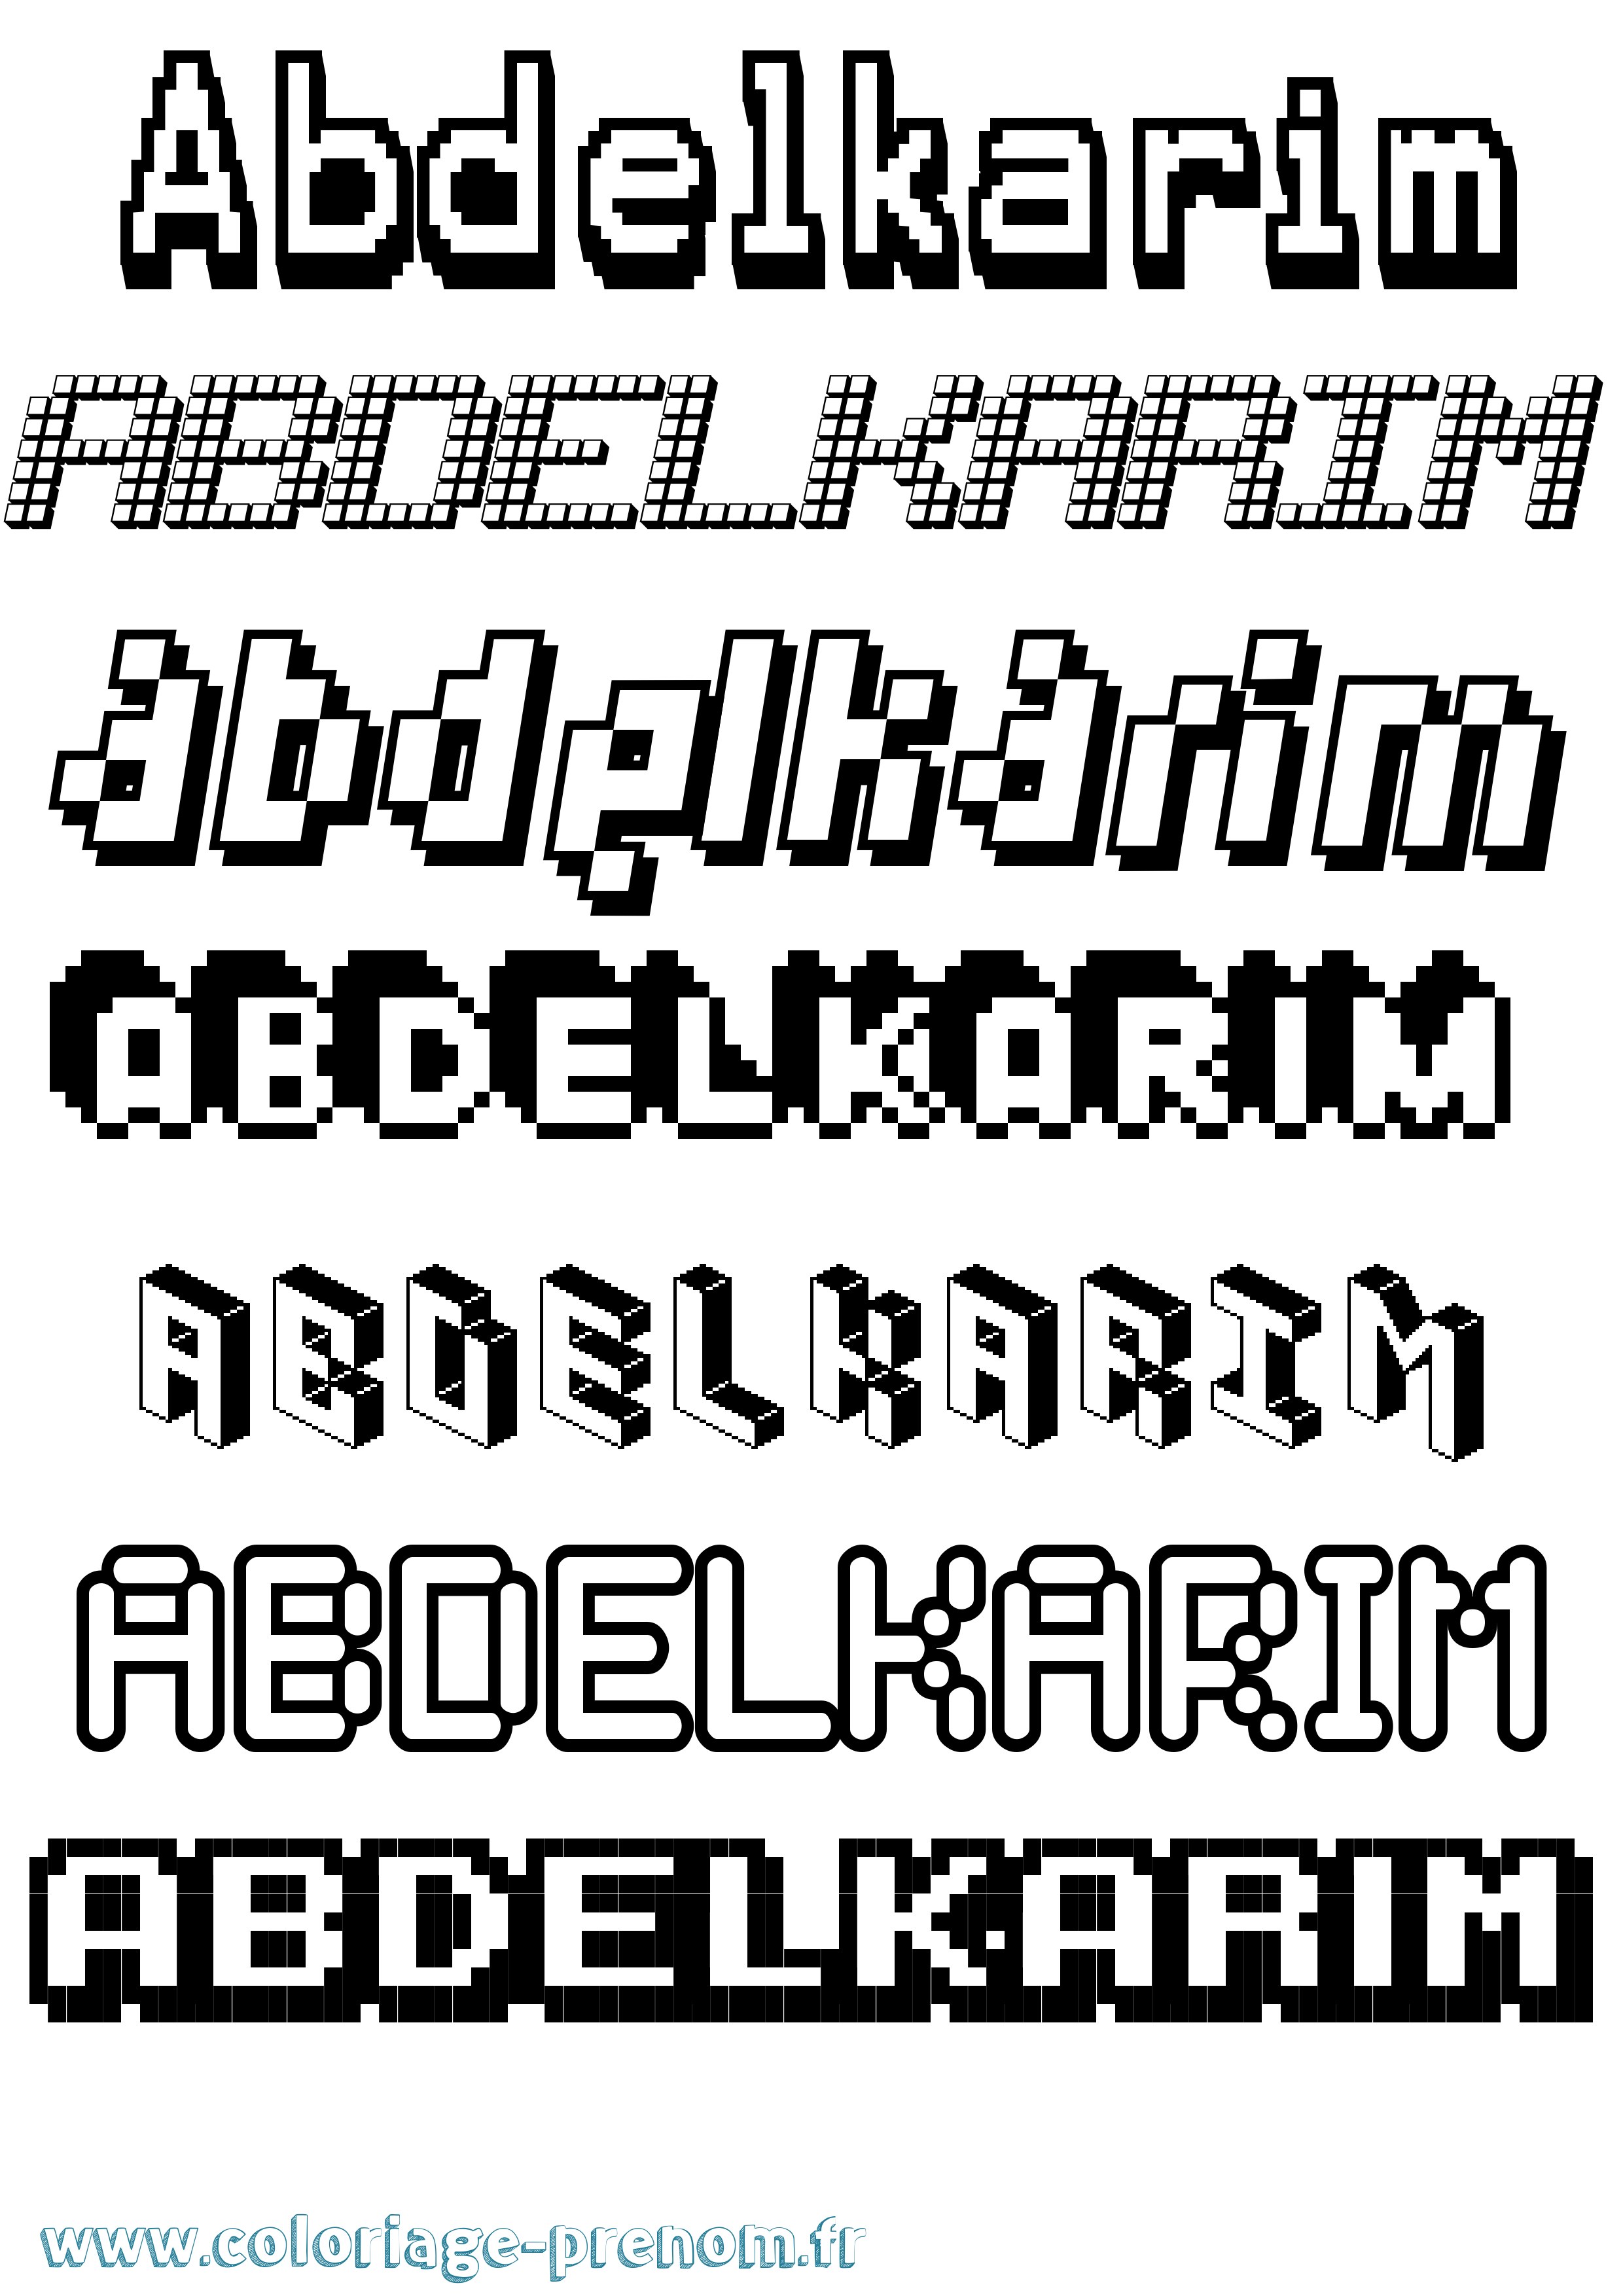 Coloriage prénom Abdelkarim Pixel